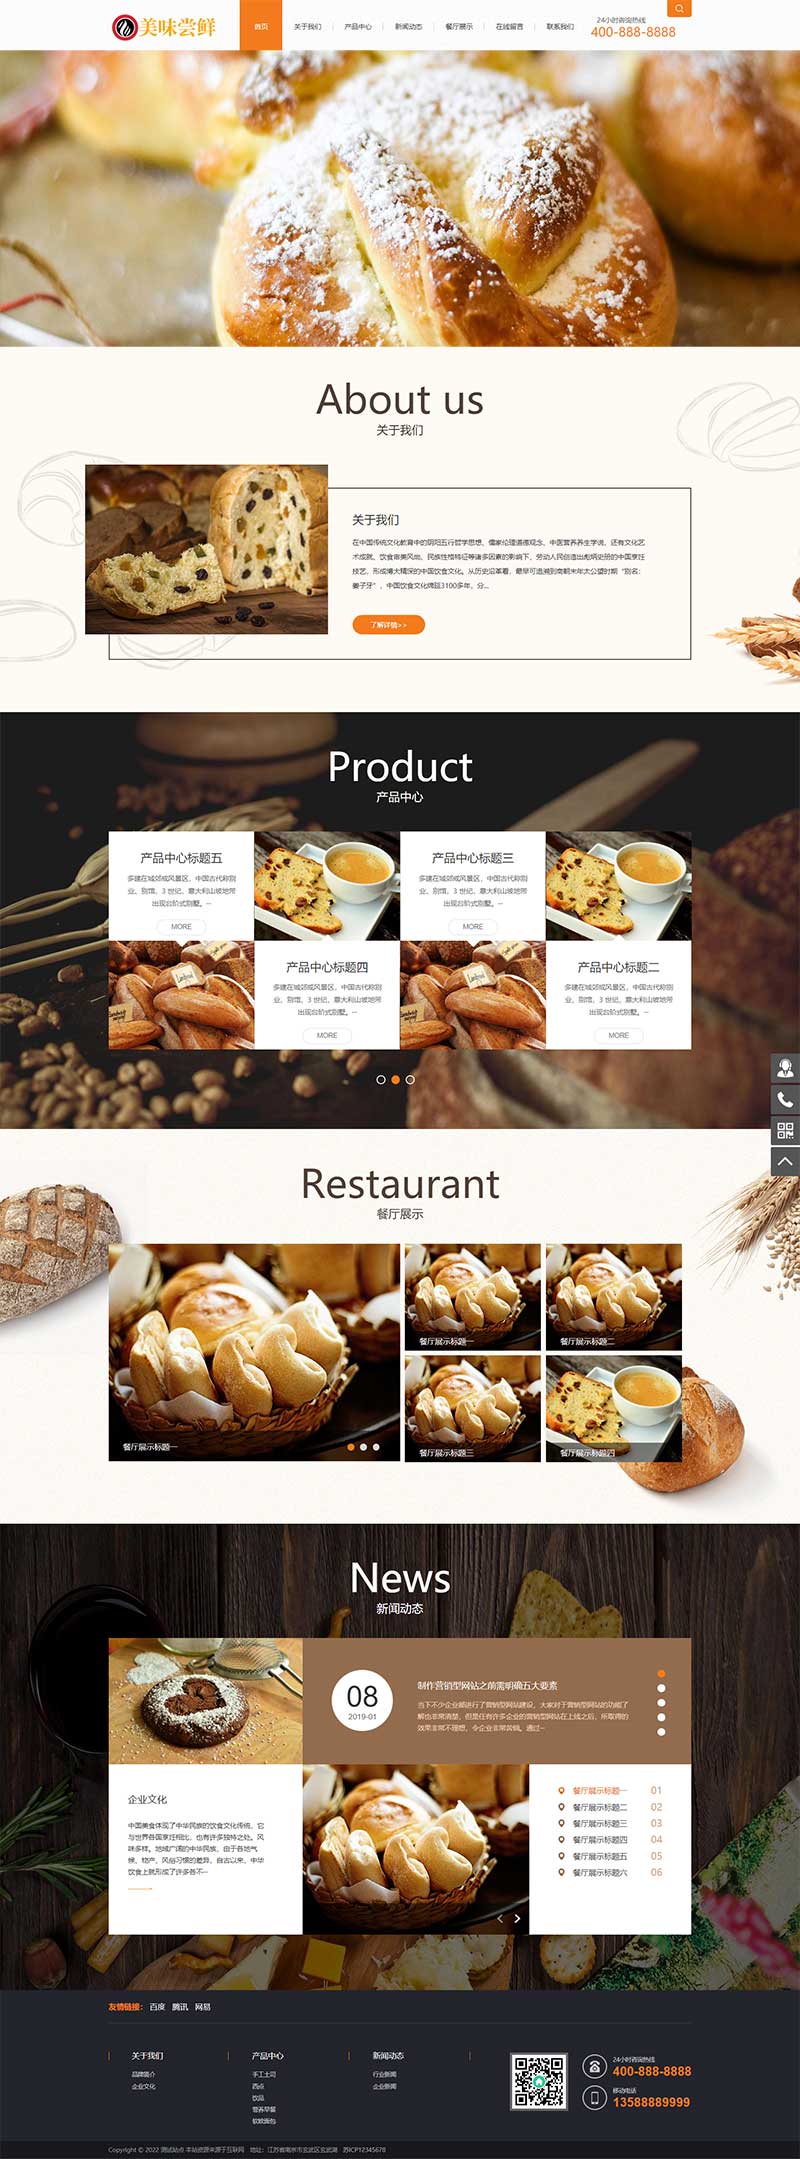 (PC+手机版)蛋糕店面包糕点食品类企业网站源码电脑端展示图片